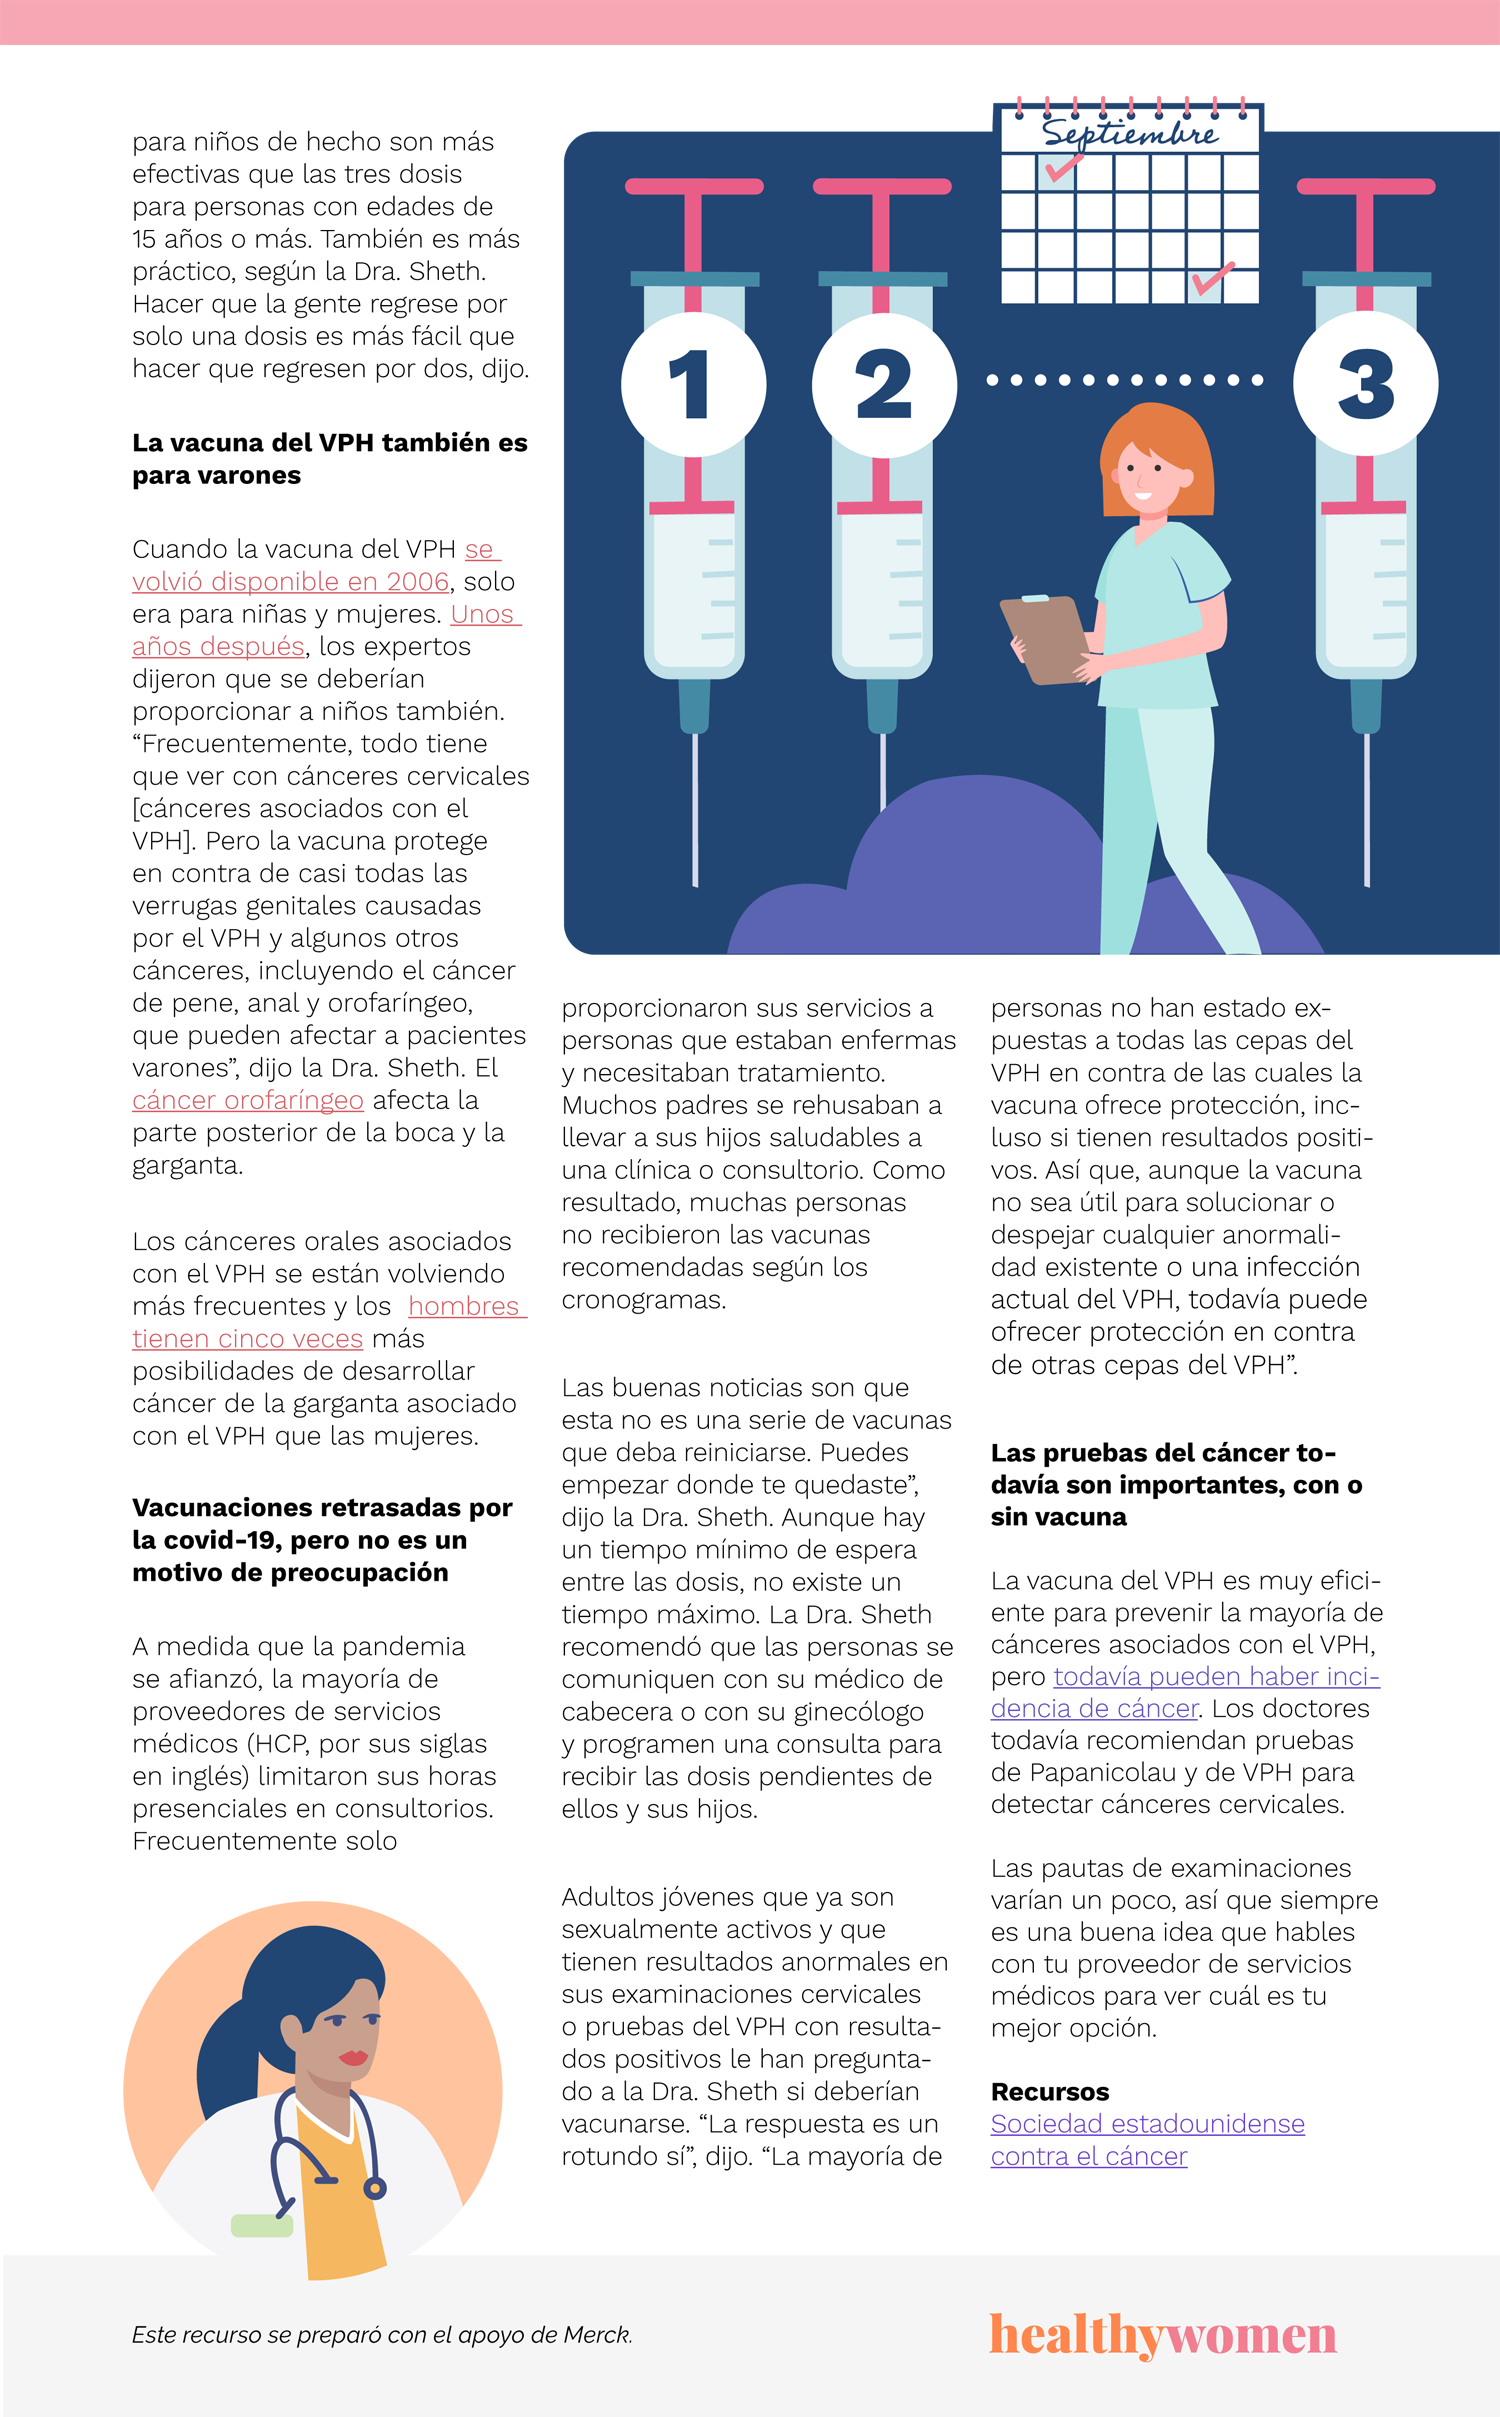 Infographic Vacuna del VPH: Lo que puede que no hayas hecho durante la pandemia. Click the image to open the PDF